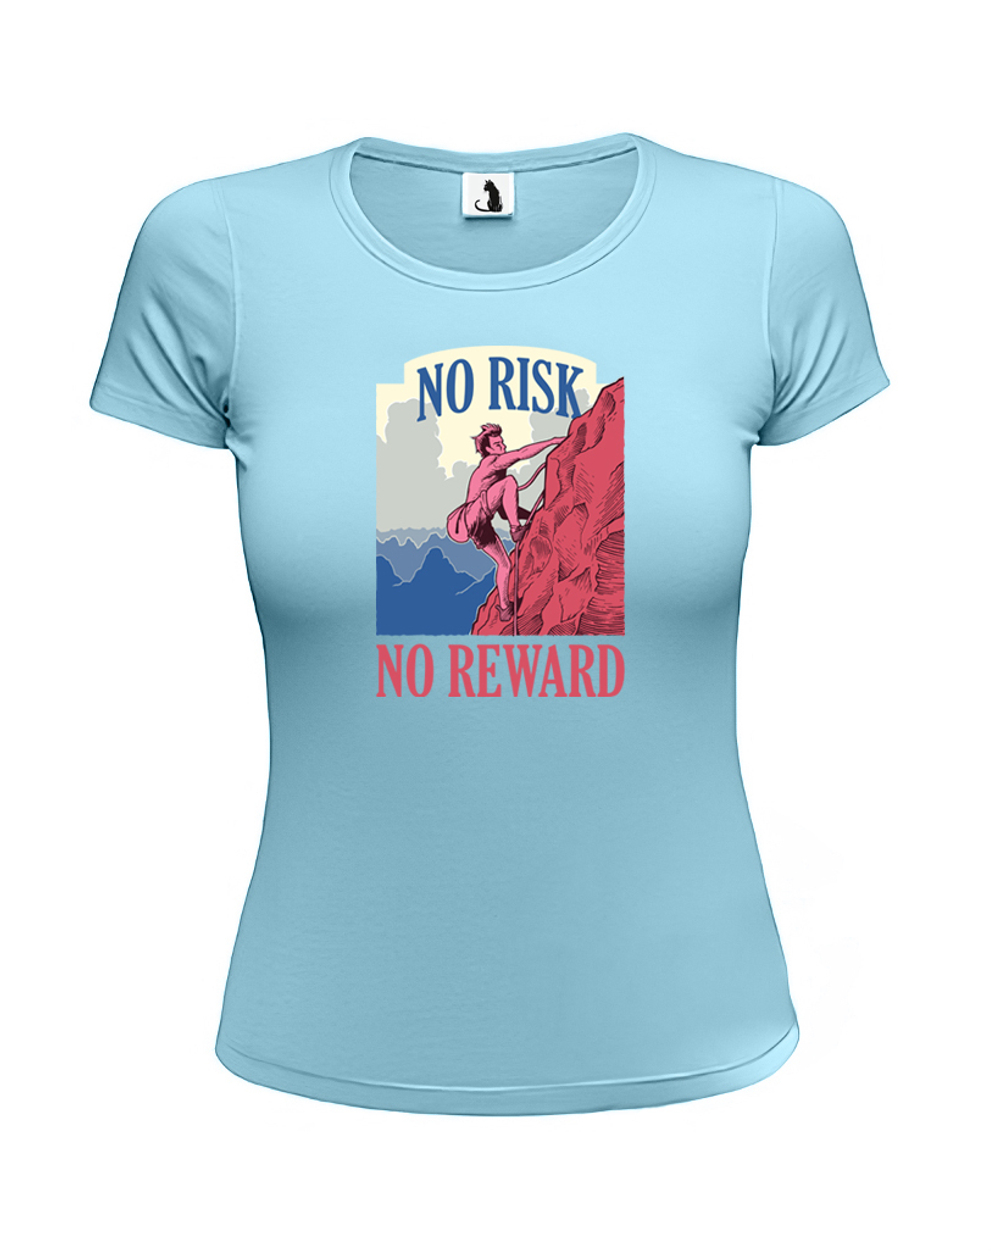 Футболка со скалолазом No risk No reward женская приталенная голубая